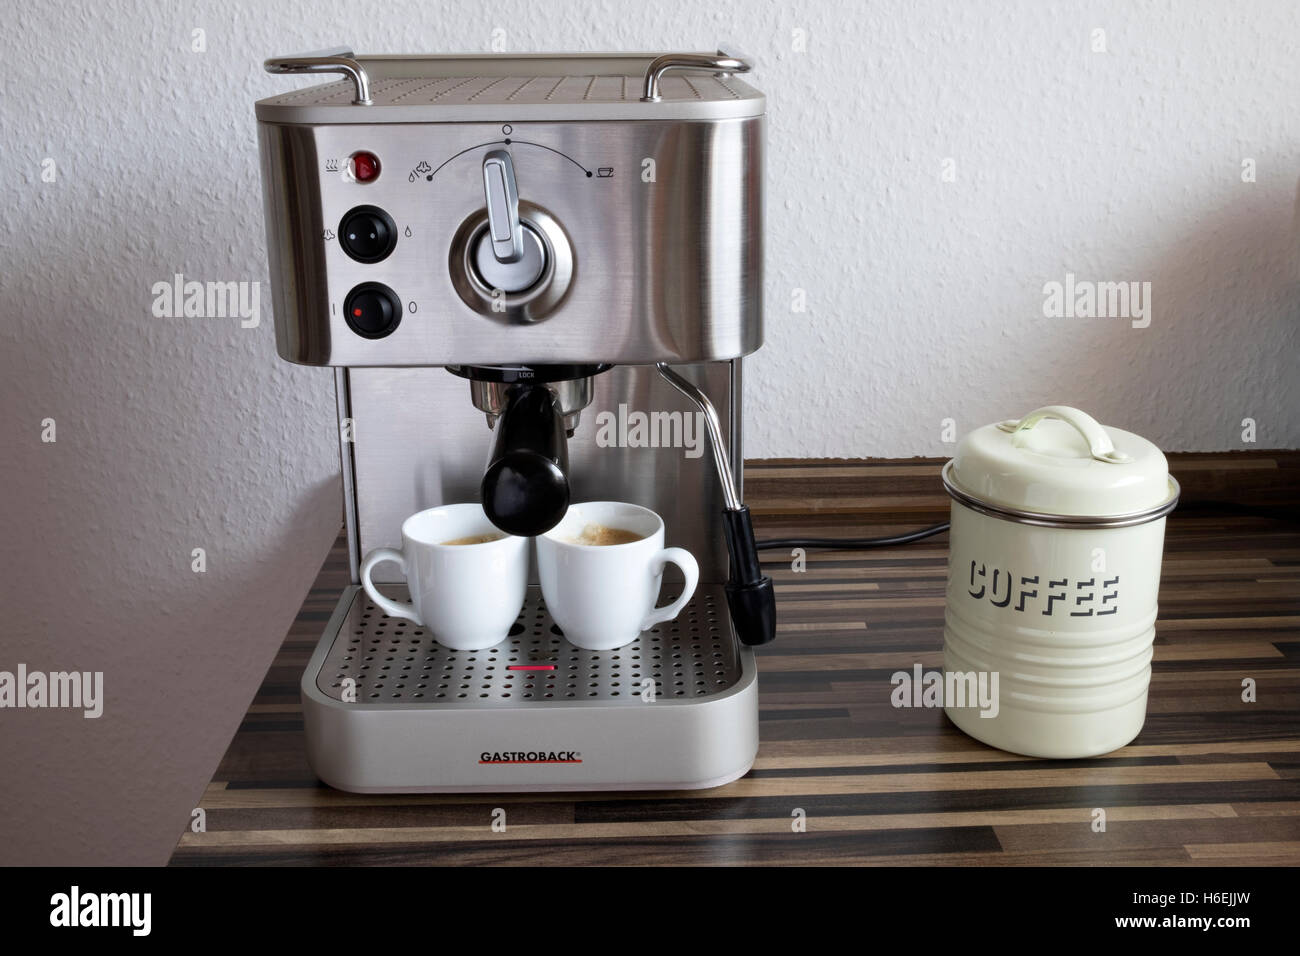 Gastroback espresso coffee machine Stock Photo